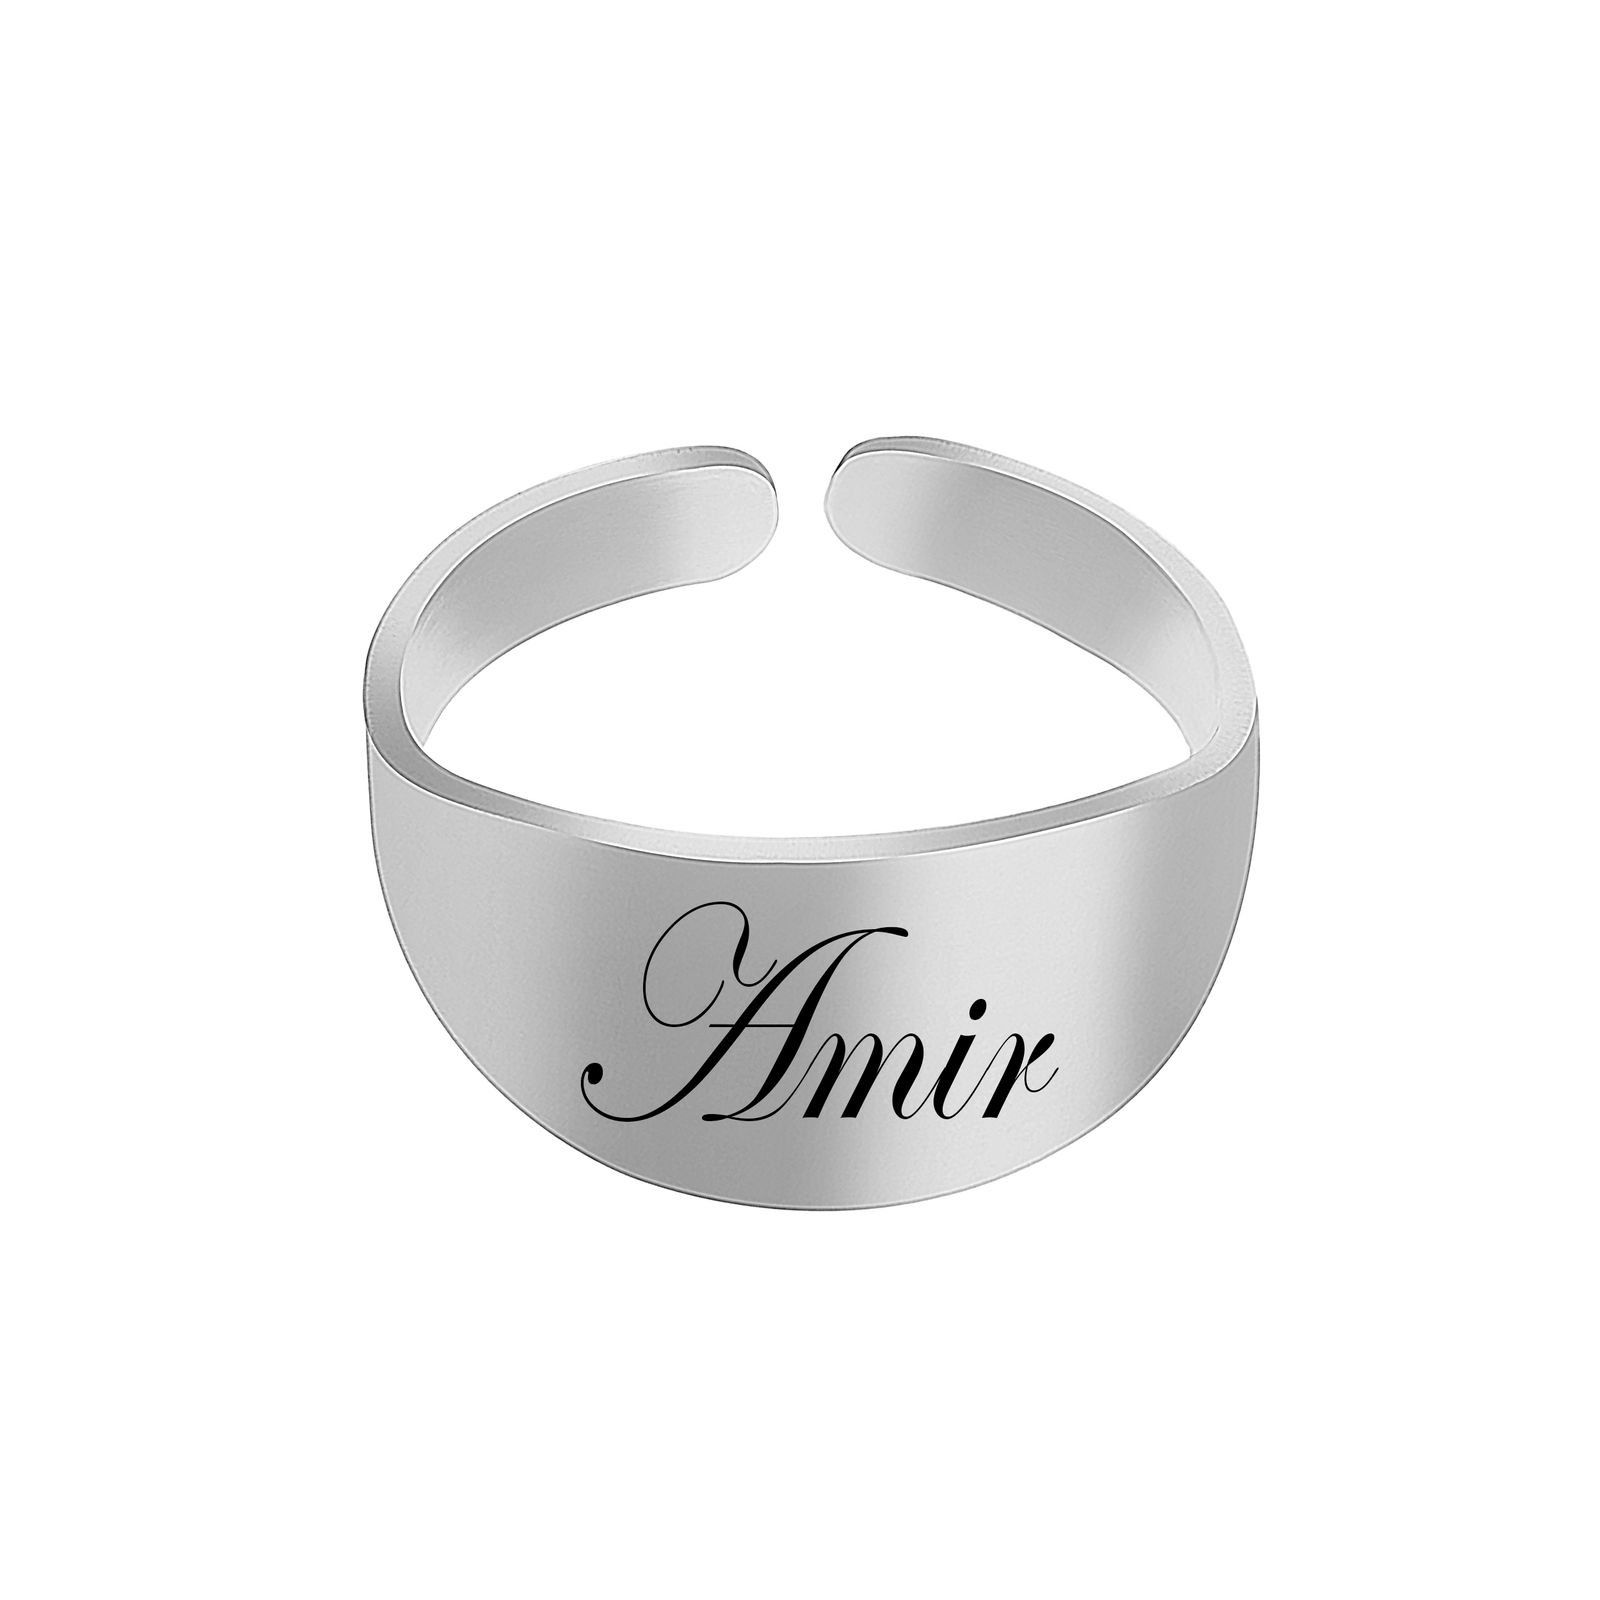 انگشتر مردانه لیردا مدل اسم امیر astl 009 -  - 1